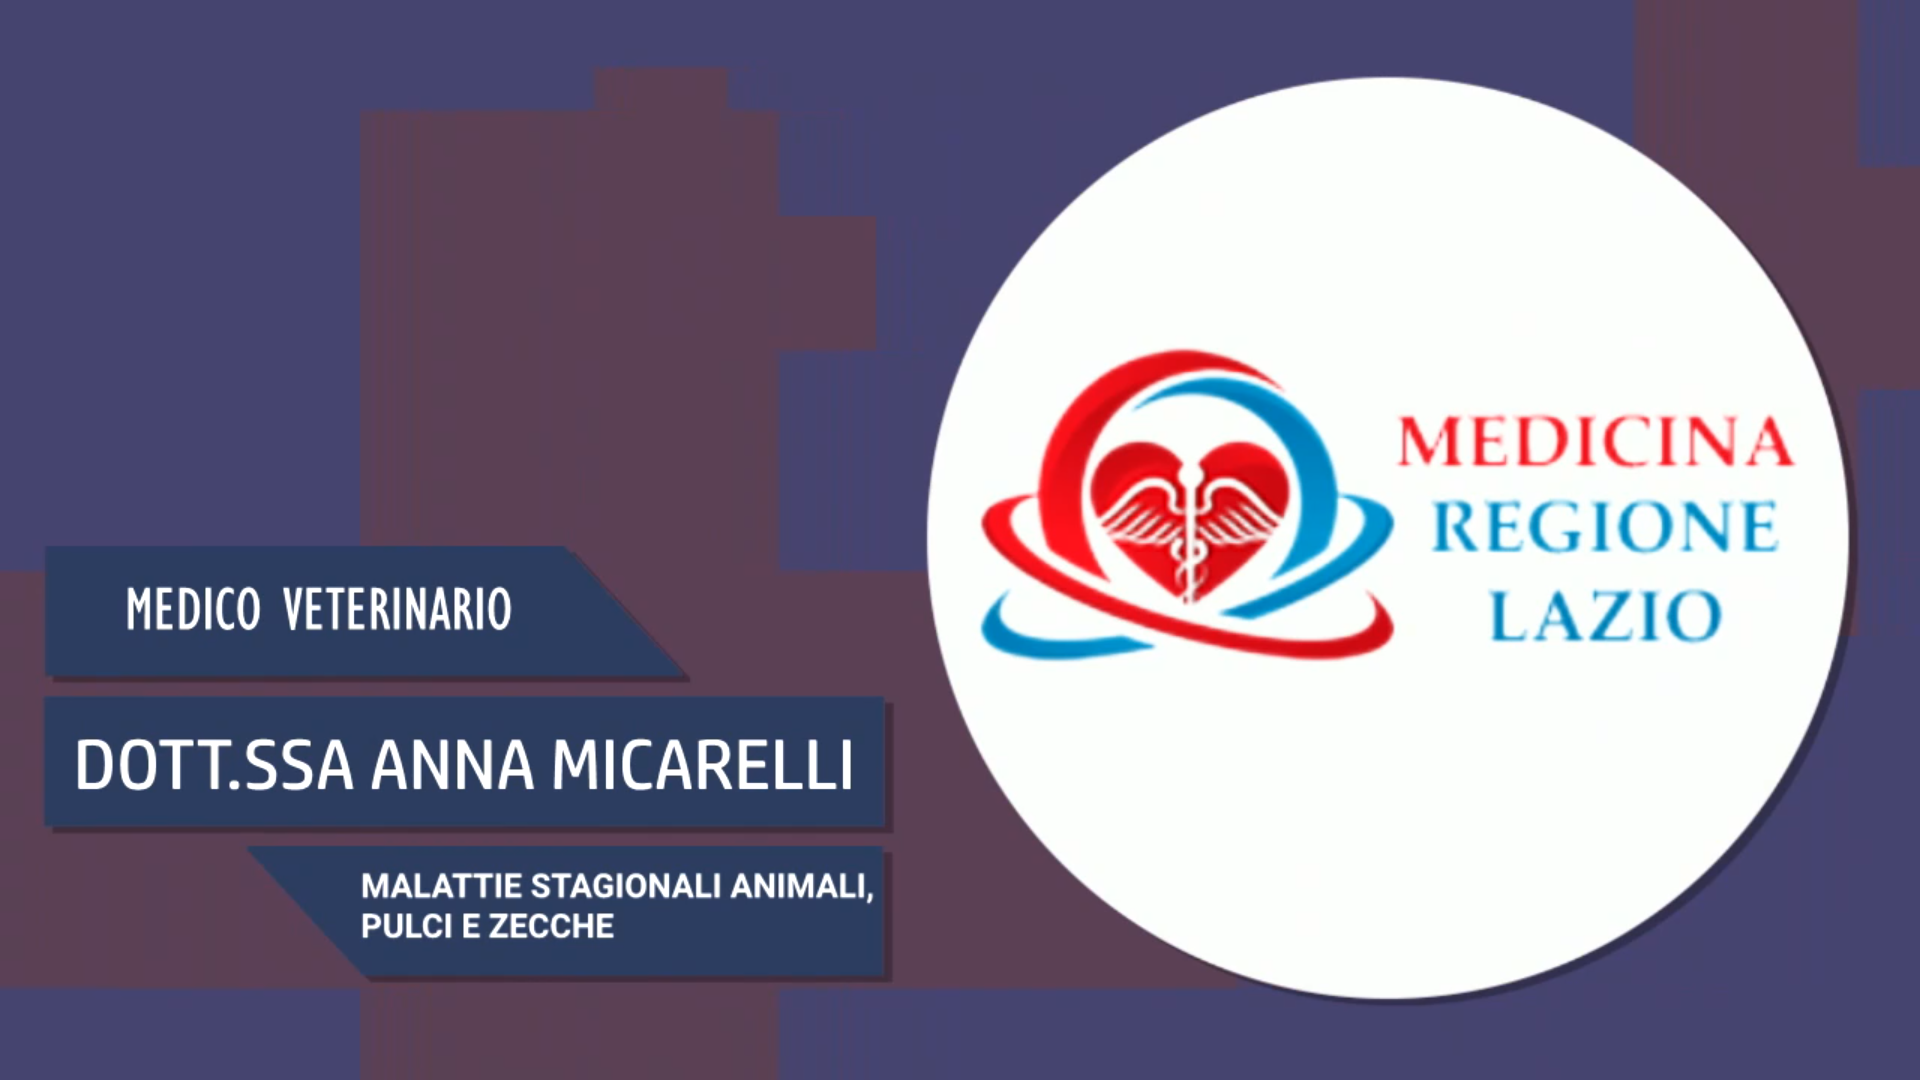 Intervista alla Dott.ssa Anna Micarelli – Malattie stagionali degli animali